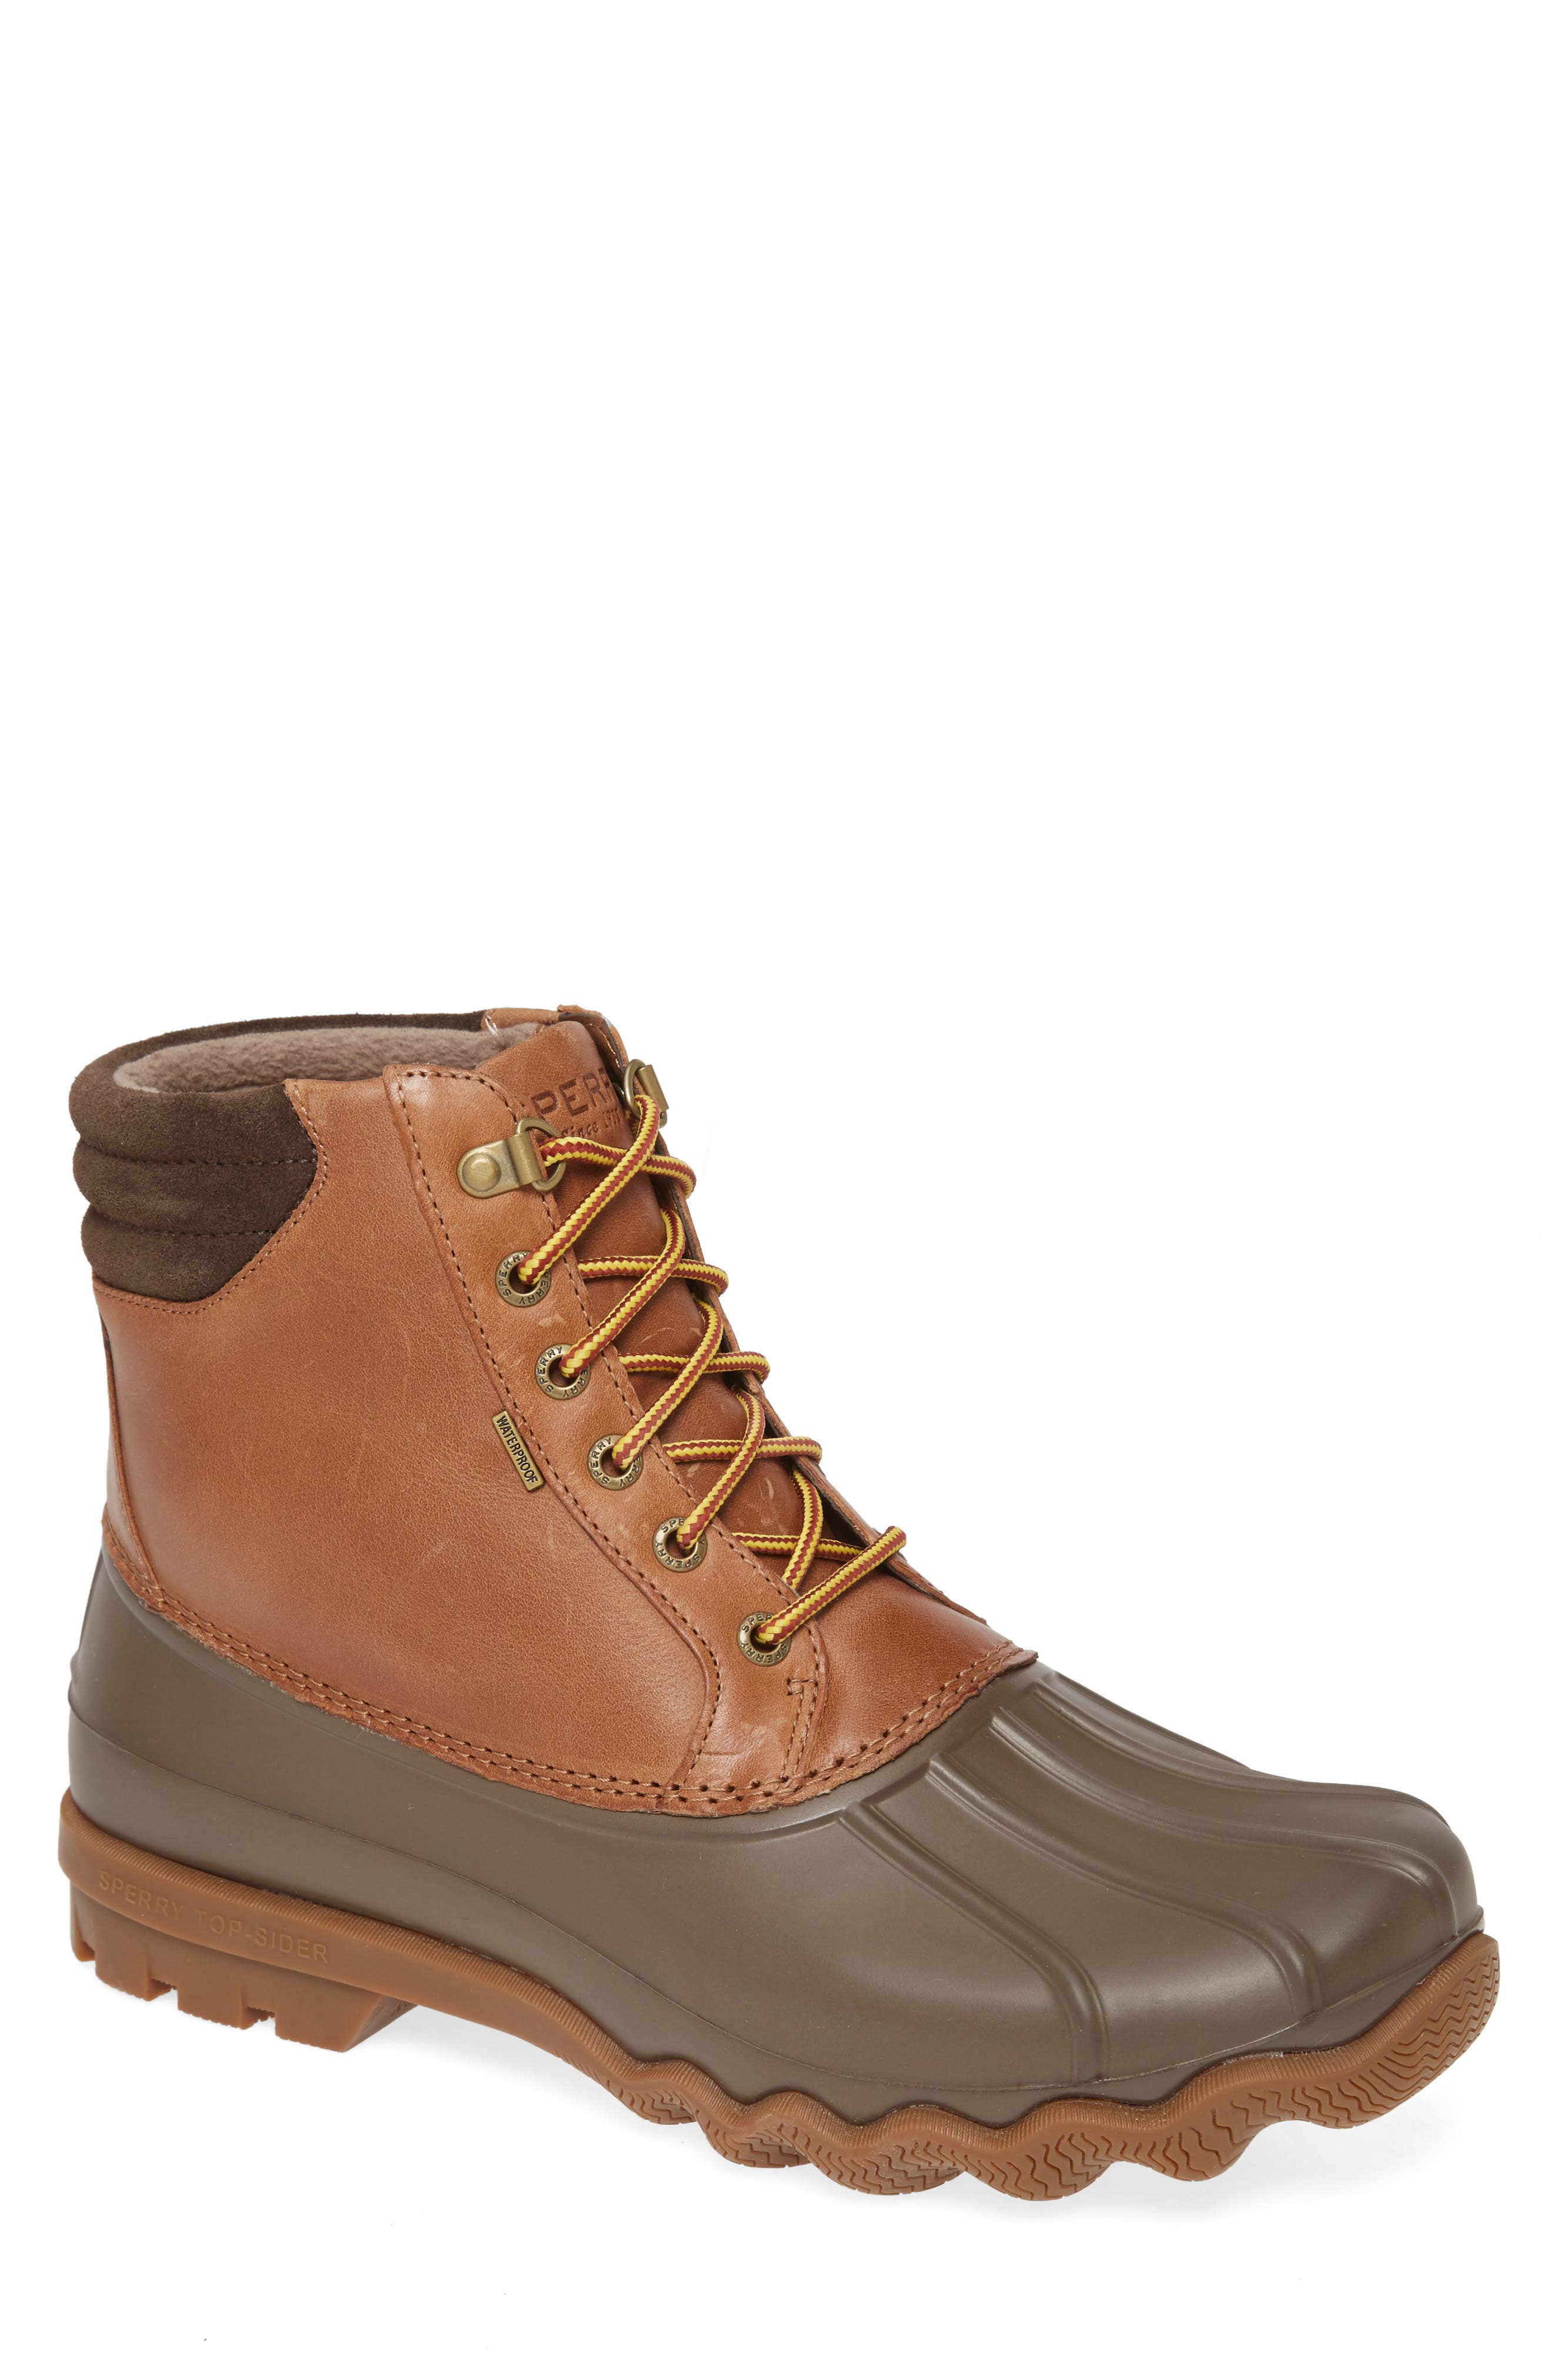 Men's Sperry Rain Boots | Nordstrom